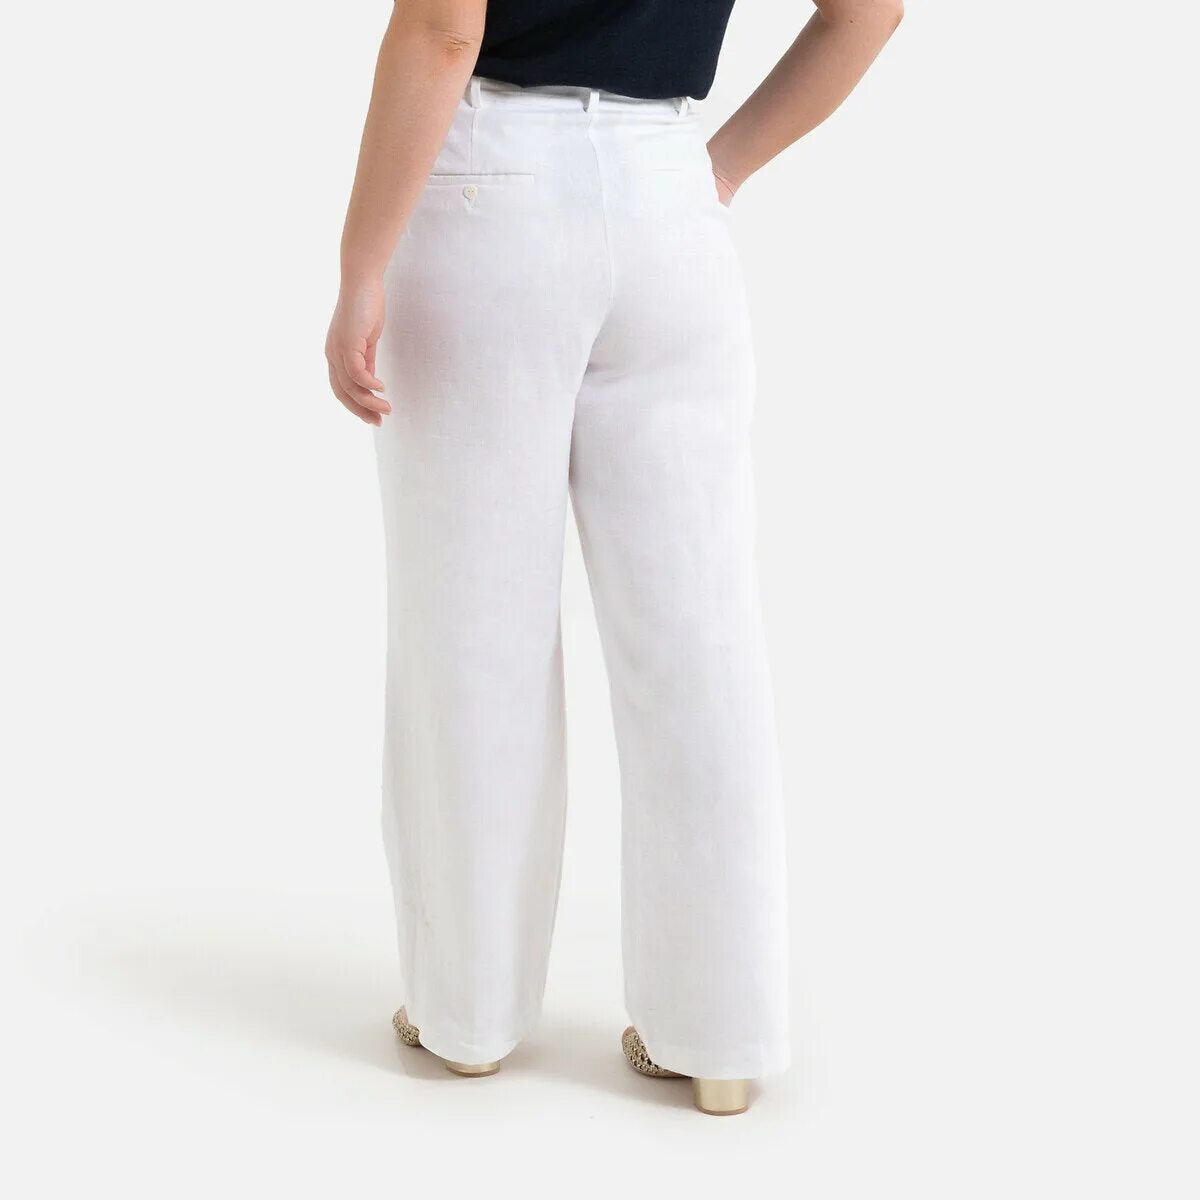 Брюки лен большие размеры. Льняные брюки b2922002 Baon. Белые льняные брюки. Белые льняные брюки женские. Брюки из льна.